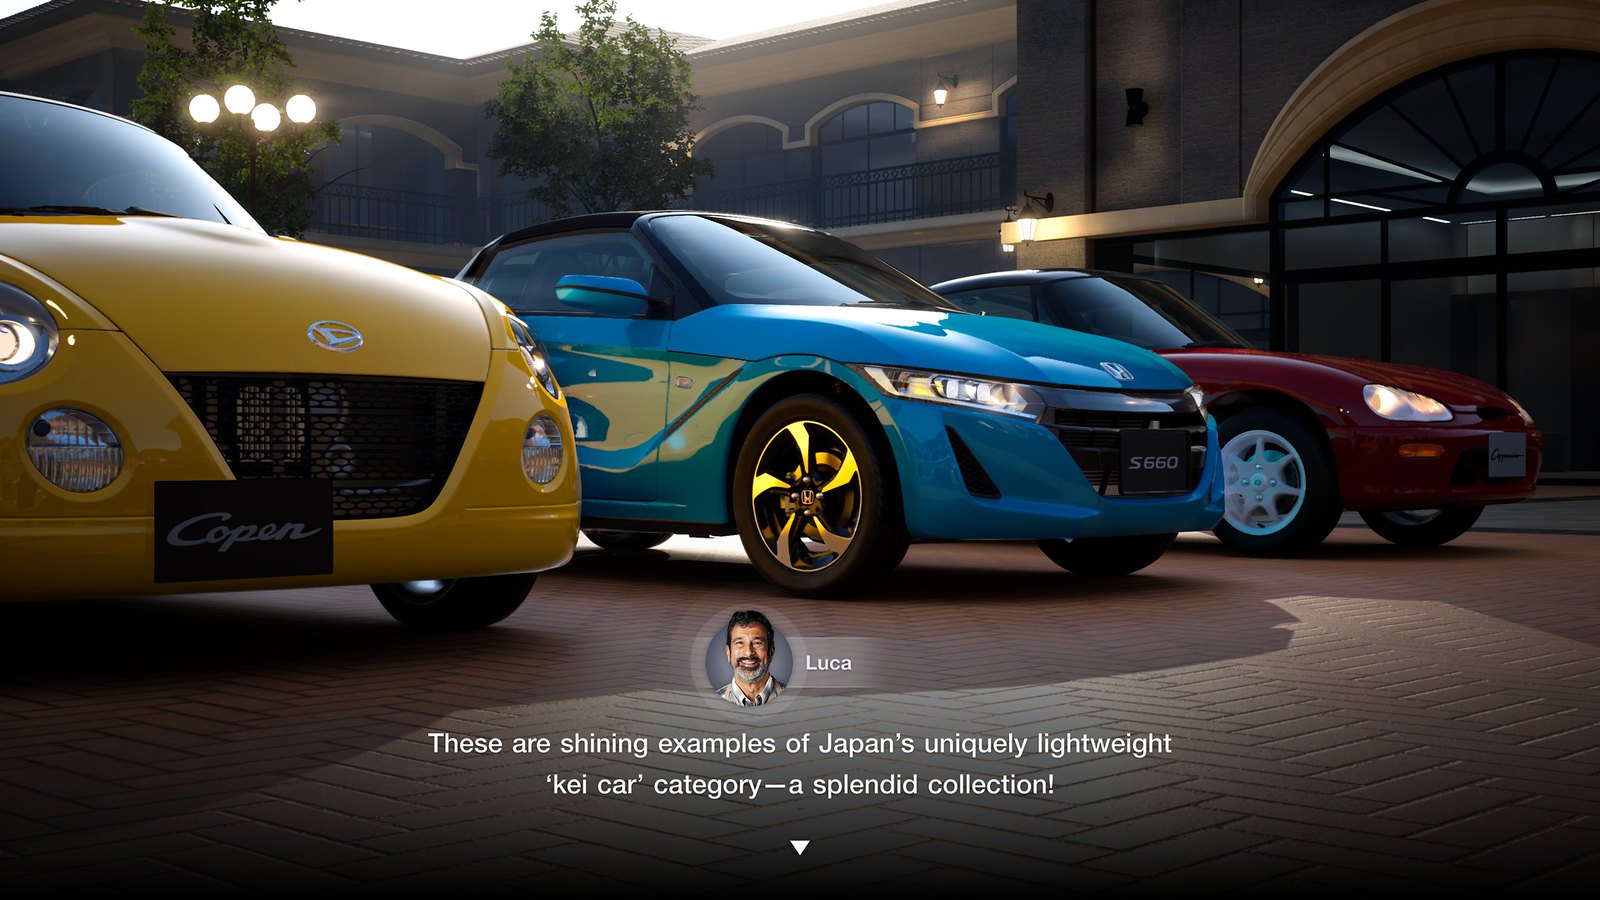 Gran Turismo 7 Recebe Atualização Robusta com Novos Carros e Recursos